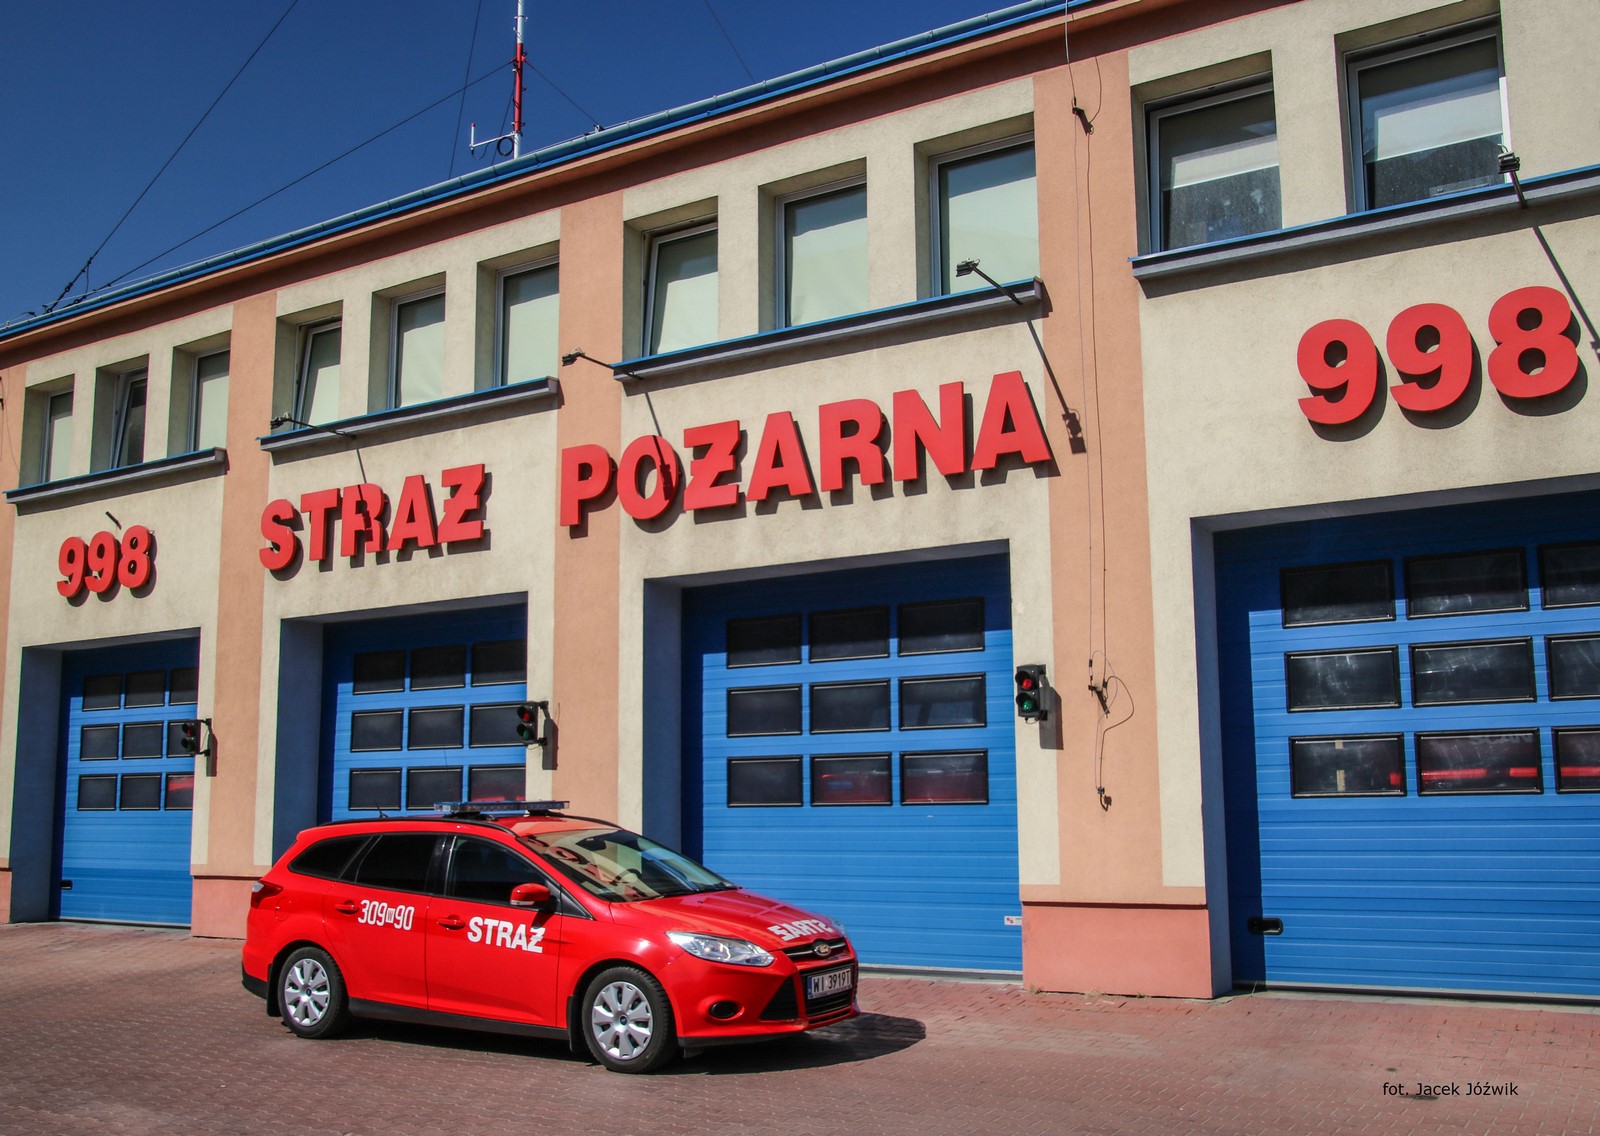 Na pierwszym planie widać czerwony, pożarniczy samochód osobowy. Na boku pojazdu widoczny jest kryptonim operacyjny pojazdu - numer 309W90 oraz napis STRAŻ. Na dachu znajduje się belka z niebieskimi sygnałami ostrzegawczymi. W tle można zobaczyć żółto-pomarańczowy budynek Jednostki Ratowniczo-Gaśniczej, czerwony napis "998 Straż Pożarna" oraz niebieskie bramy garażowe.